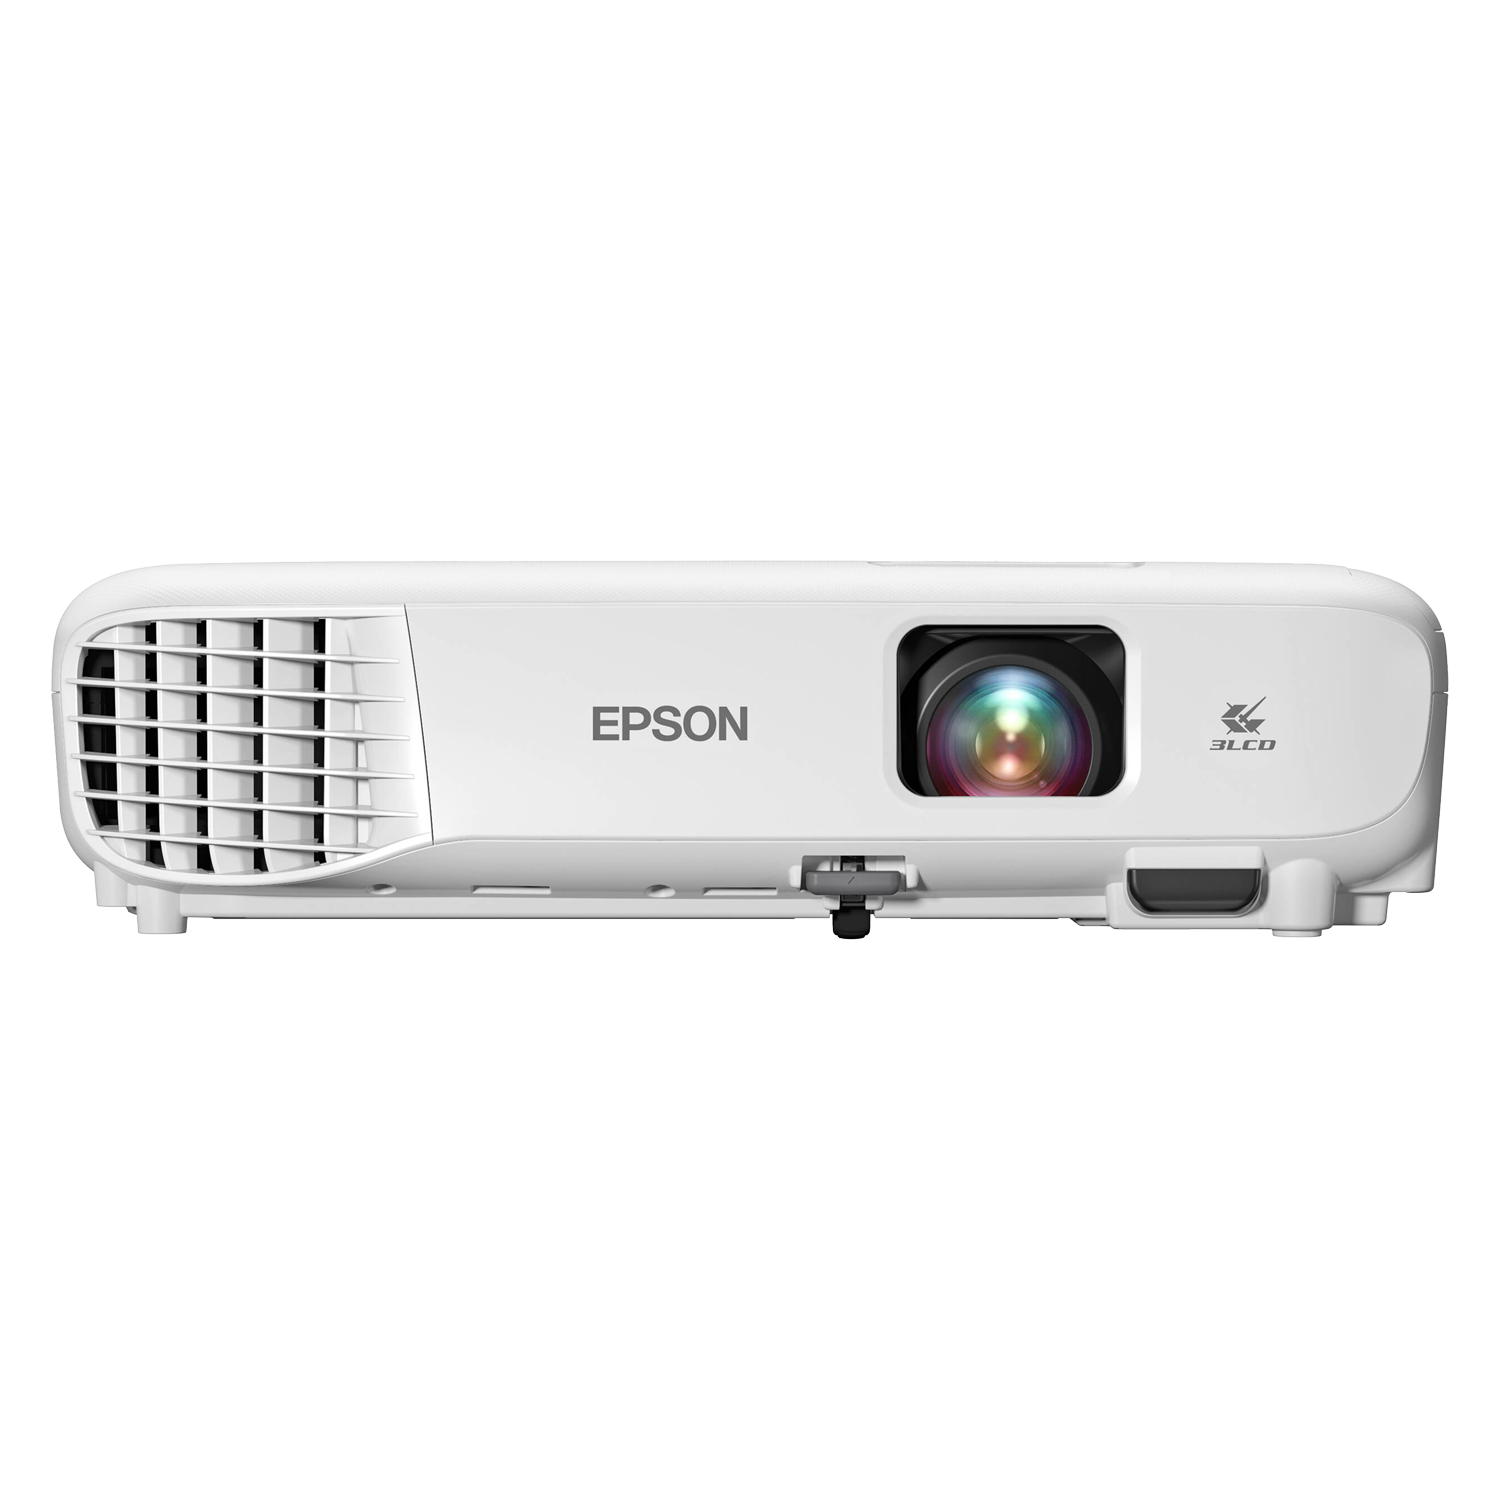 Projetor Epson VS260 3300 Lumens Hdmi / Vga / Usb - White